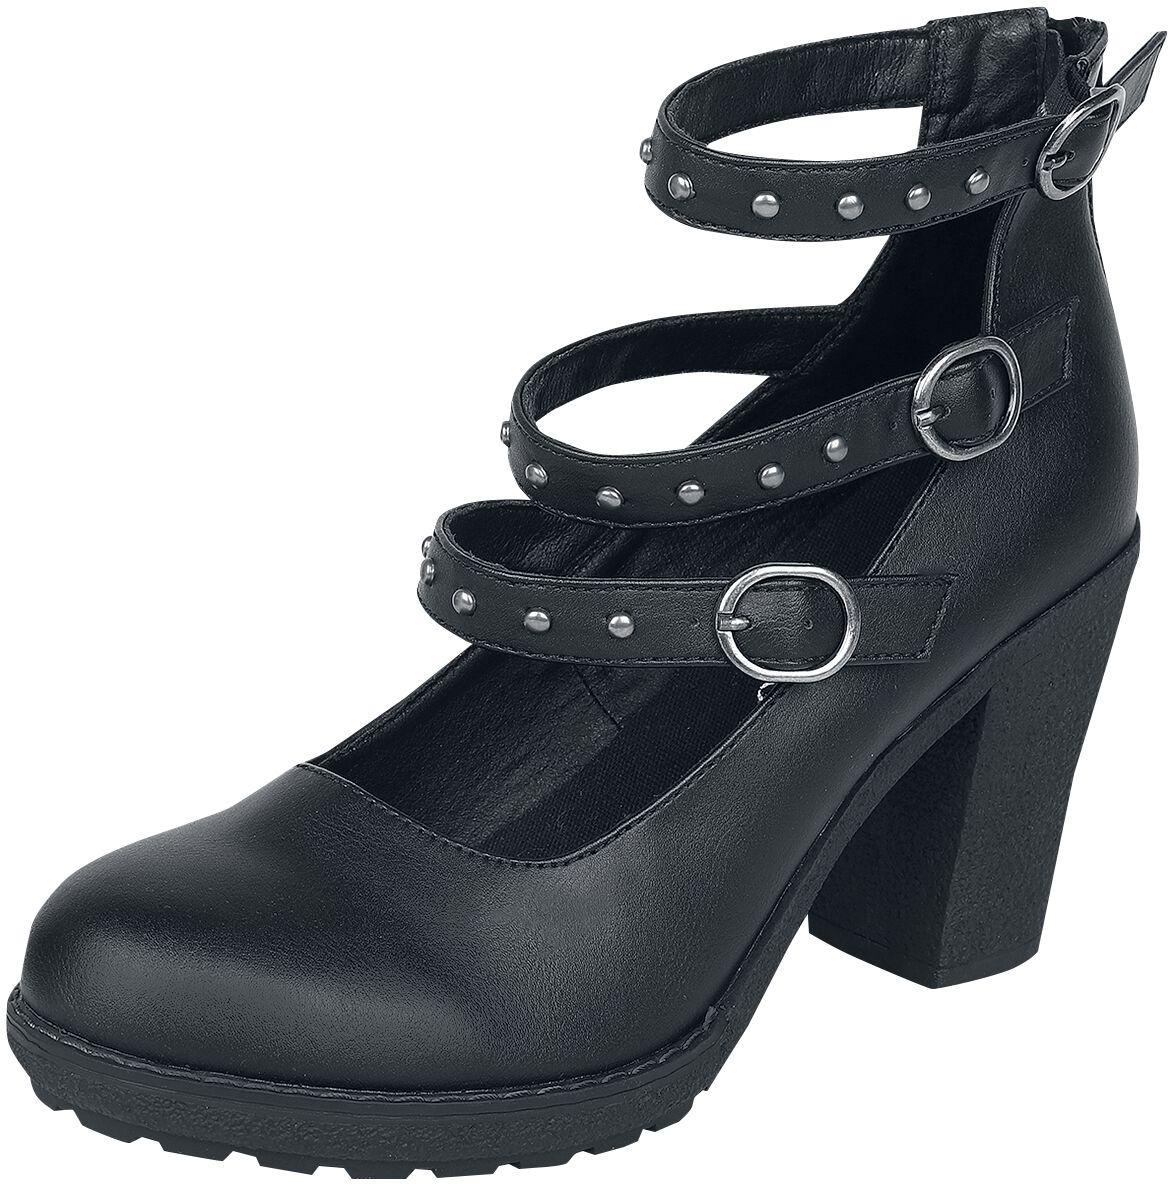 Gothicana by EMP - Gothic High Heel - High Heels mit Riemen und Nieten - EU37 bis EU41 - für Damen - Größe EU37 - schwarz